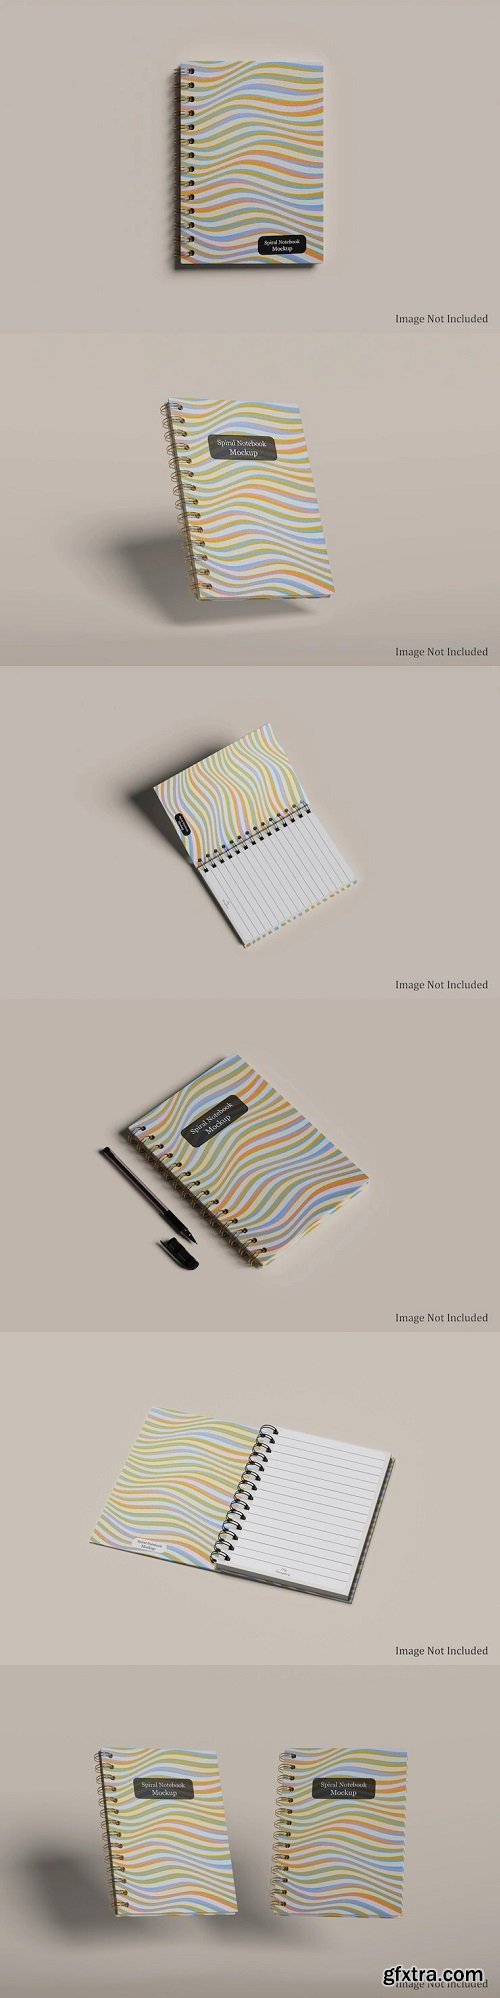 Spiral notebook mockup